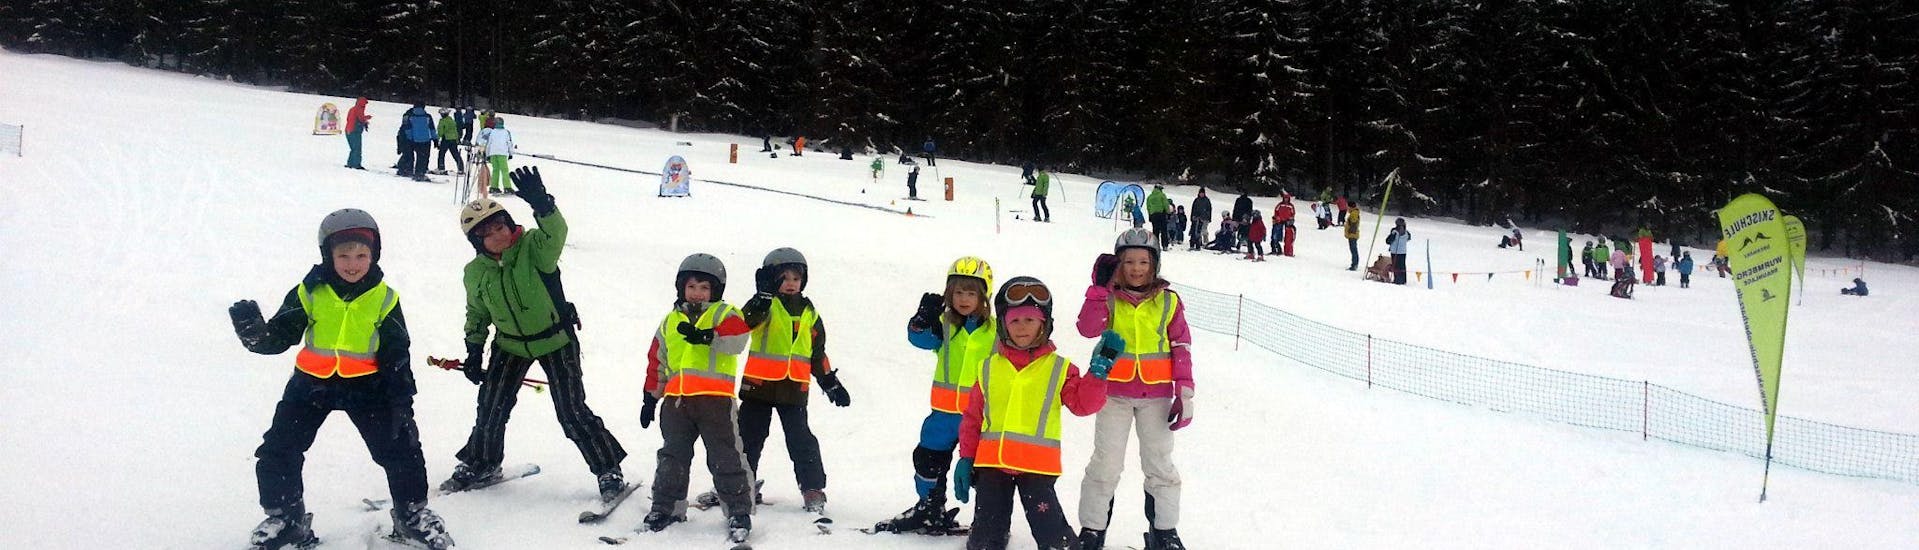 Skikurs für Kinder & Jugendliche (12-15 J.) für Anfänger.